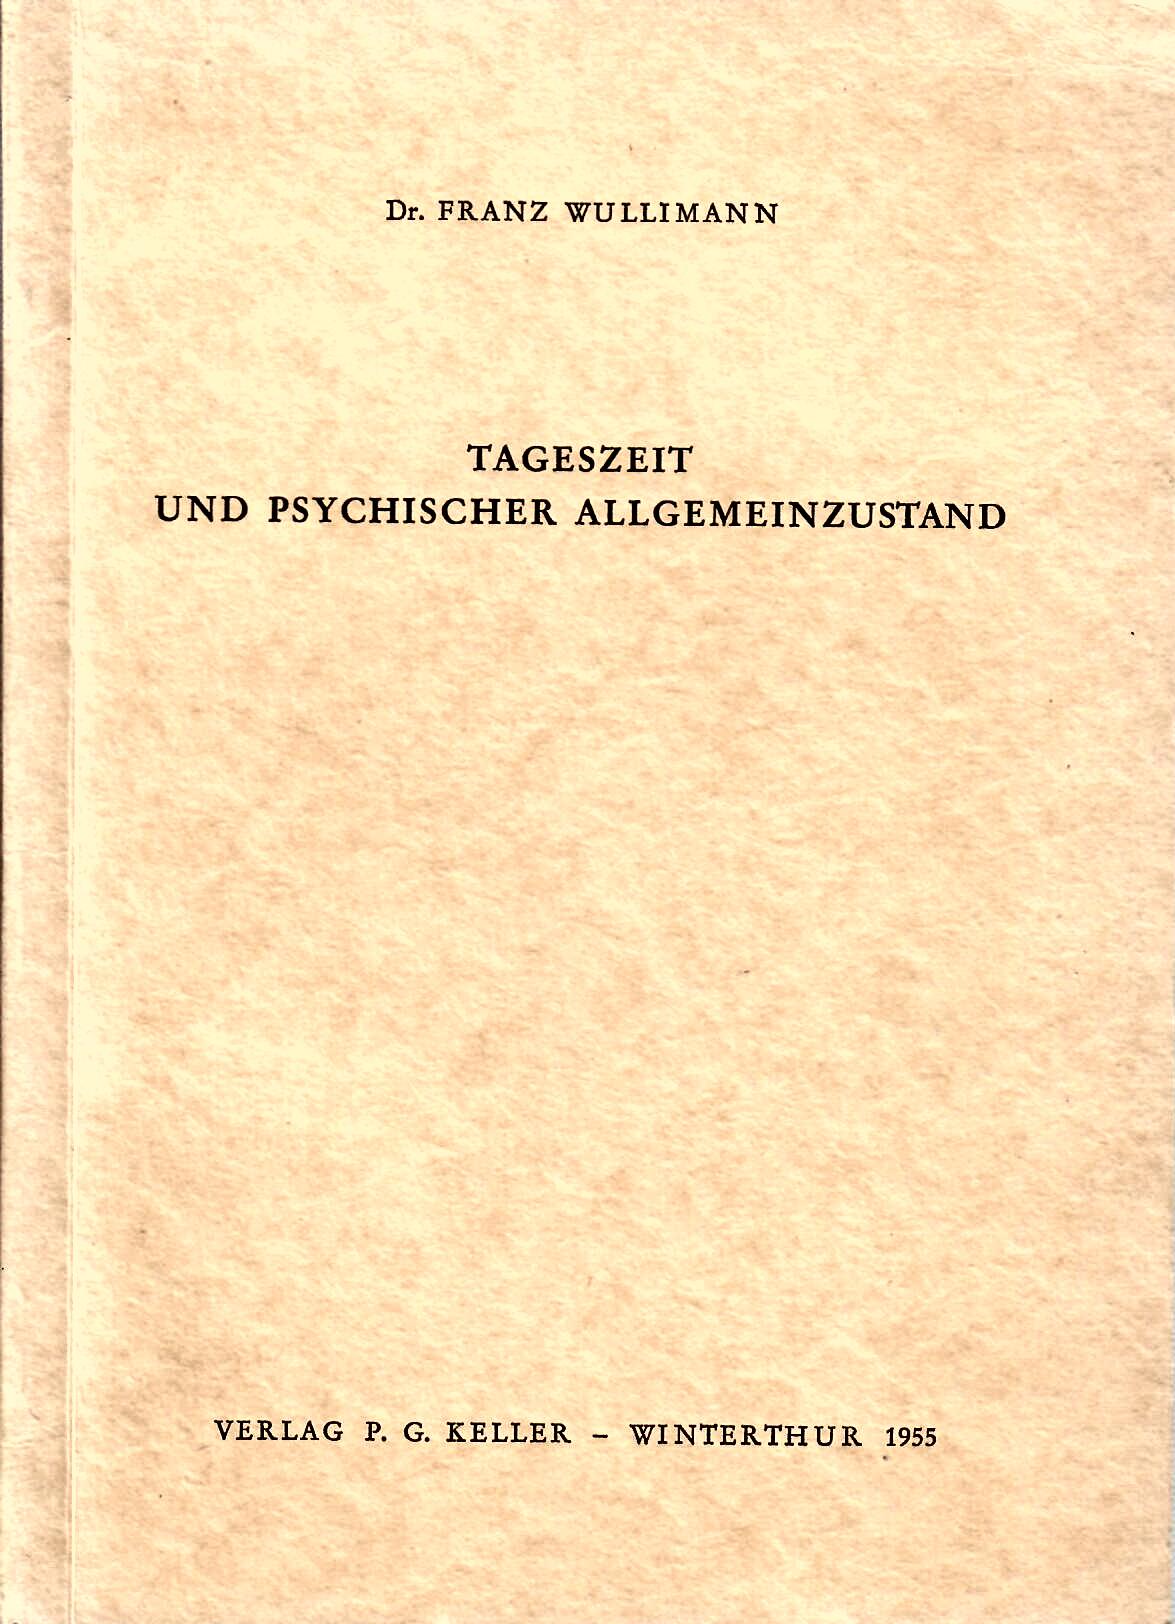 Wullimann, Franz   : Tageszeit und psychischer Allgemeinzustand : Verlag P.G. Keller Winterthur 1955 : 78 Seiten : sehr guter Zustand